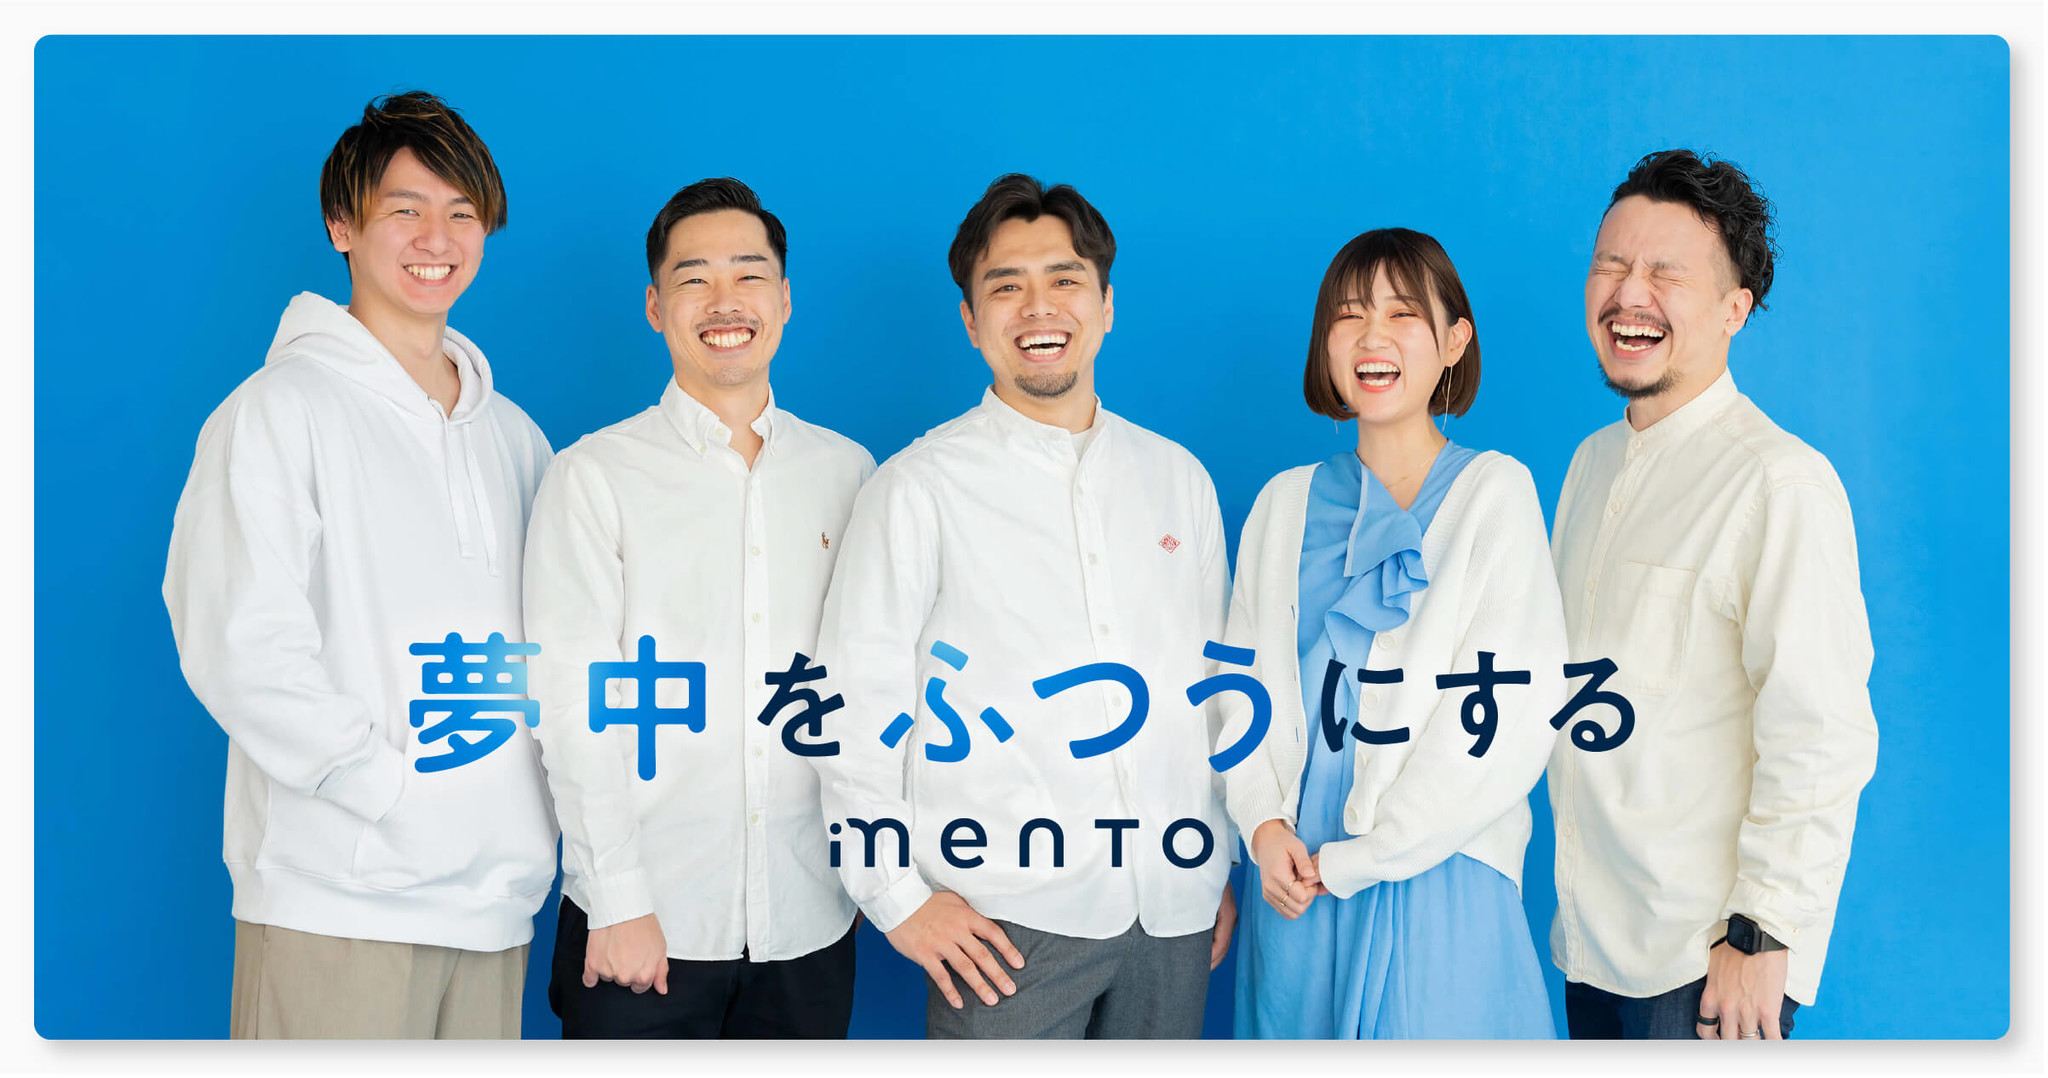 コーチングサービス「mento」、WiLから3.3億円の資金調達を実施